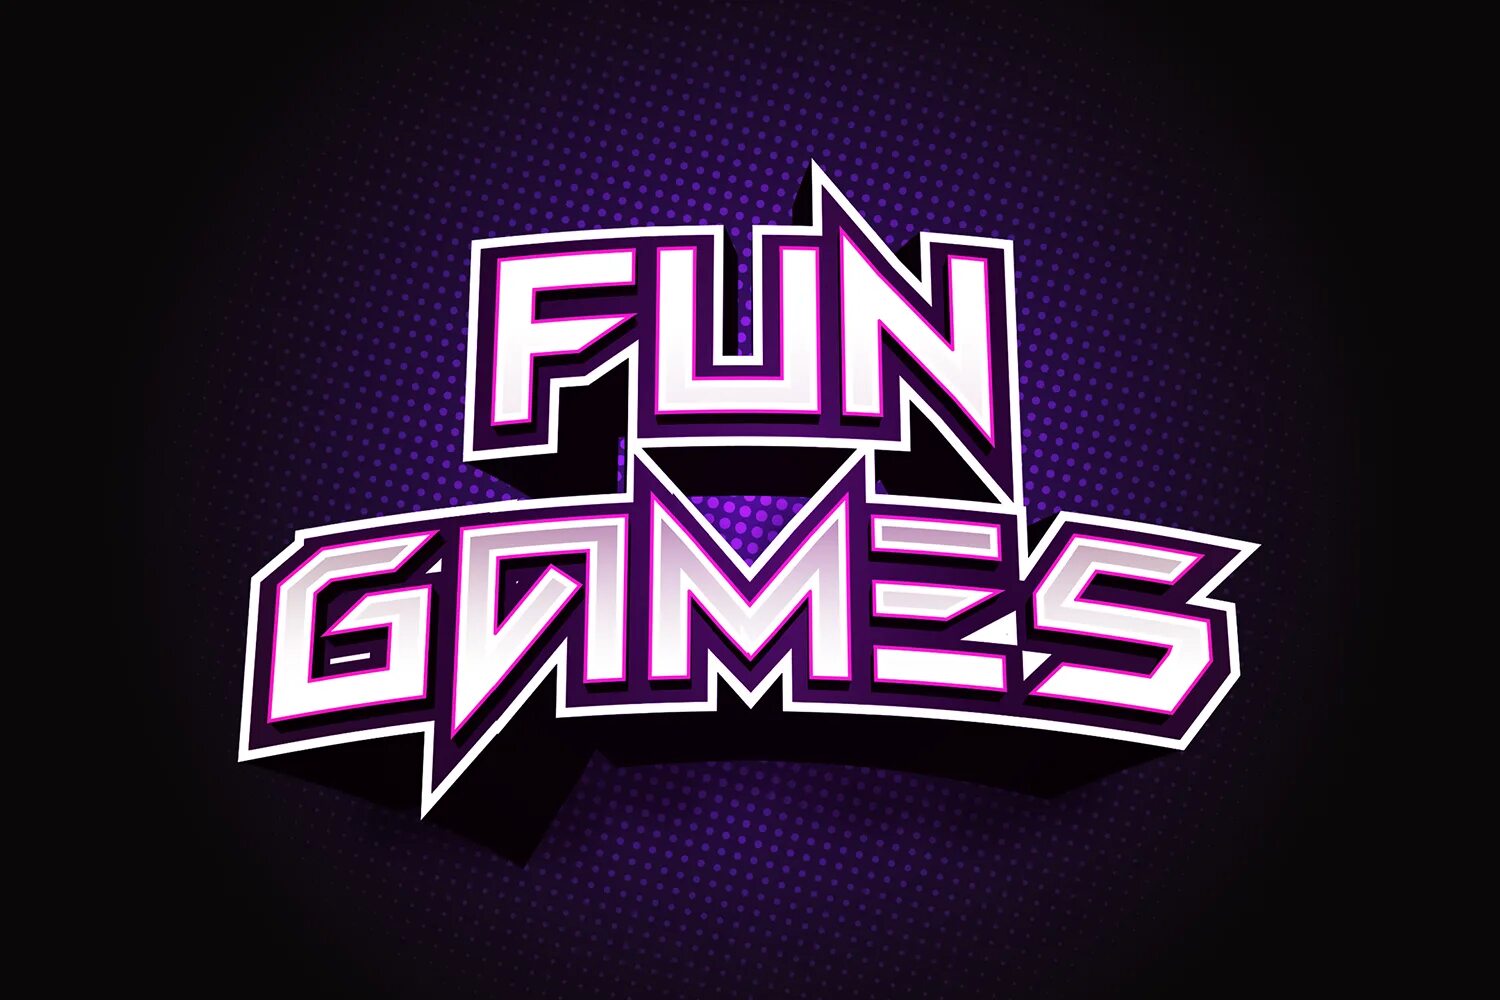 Fun and games. Fun игра. Fun game компания. Fun games font. The game is fun